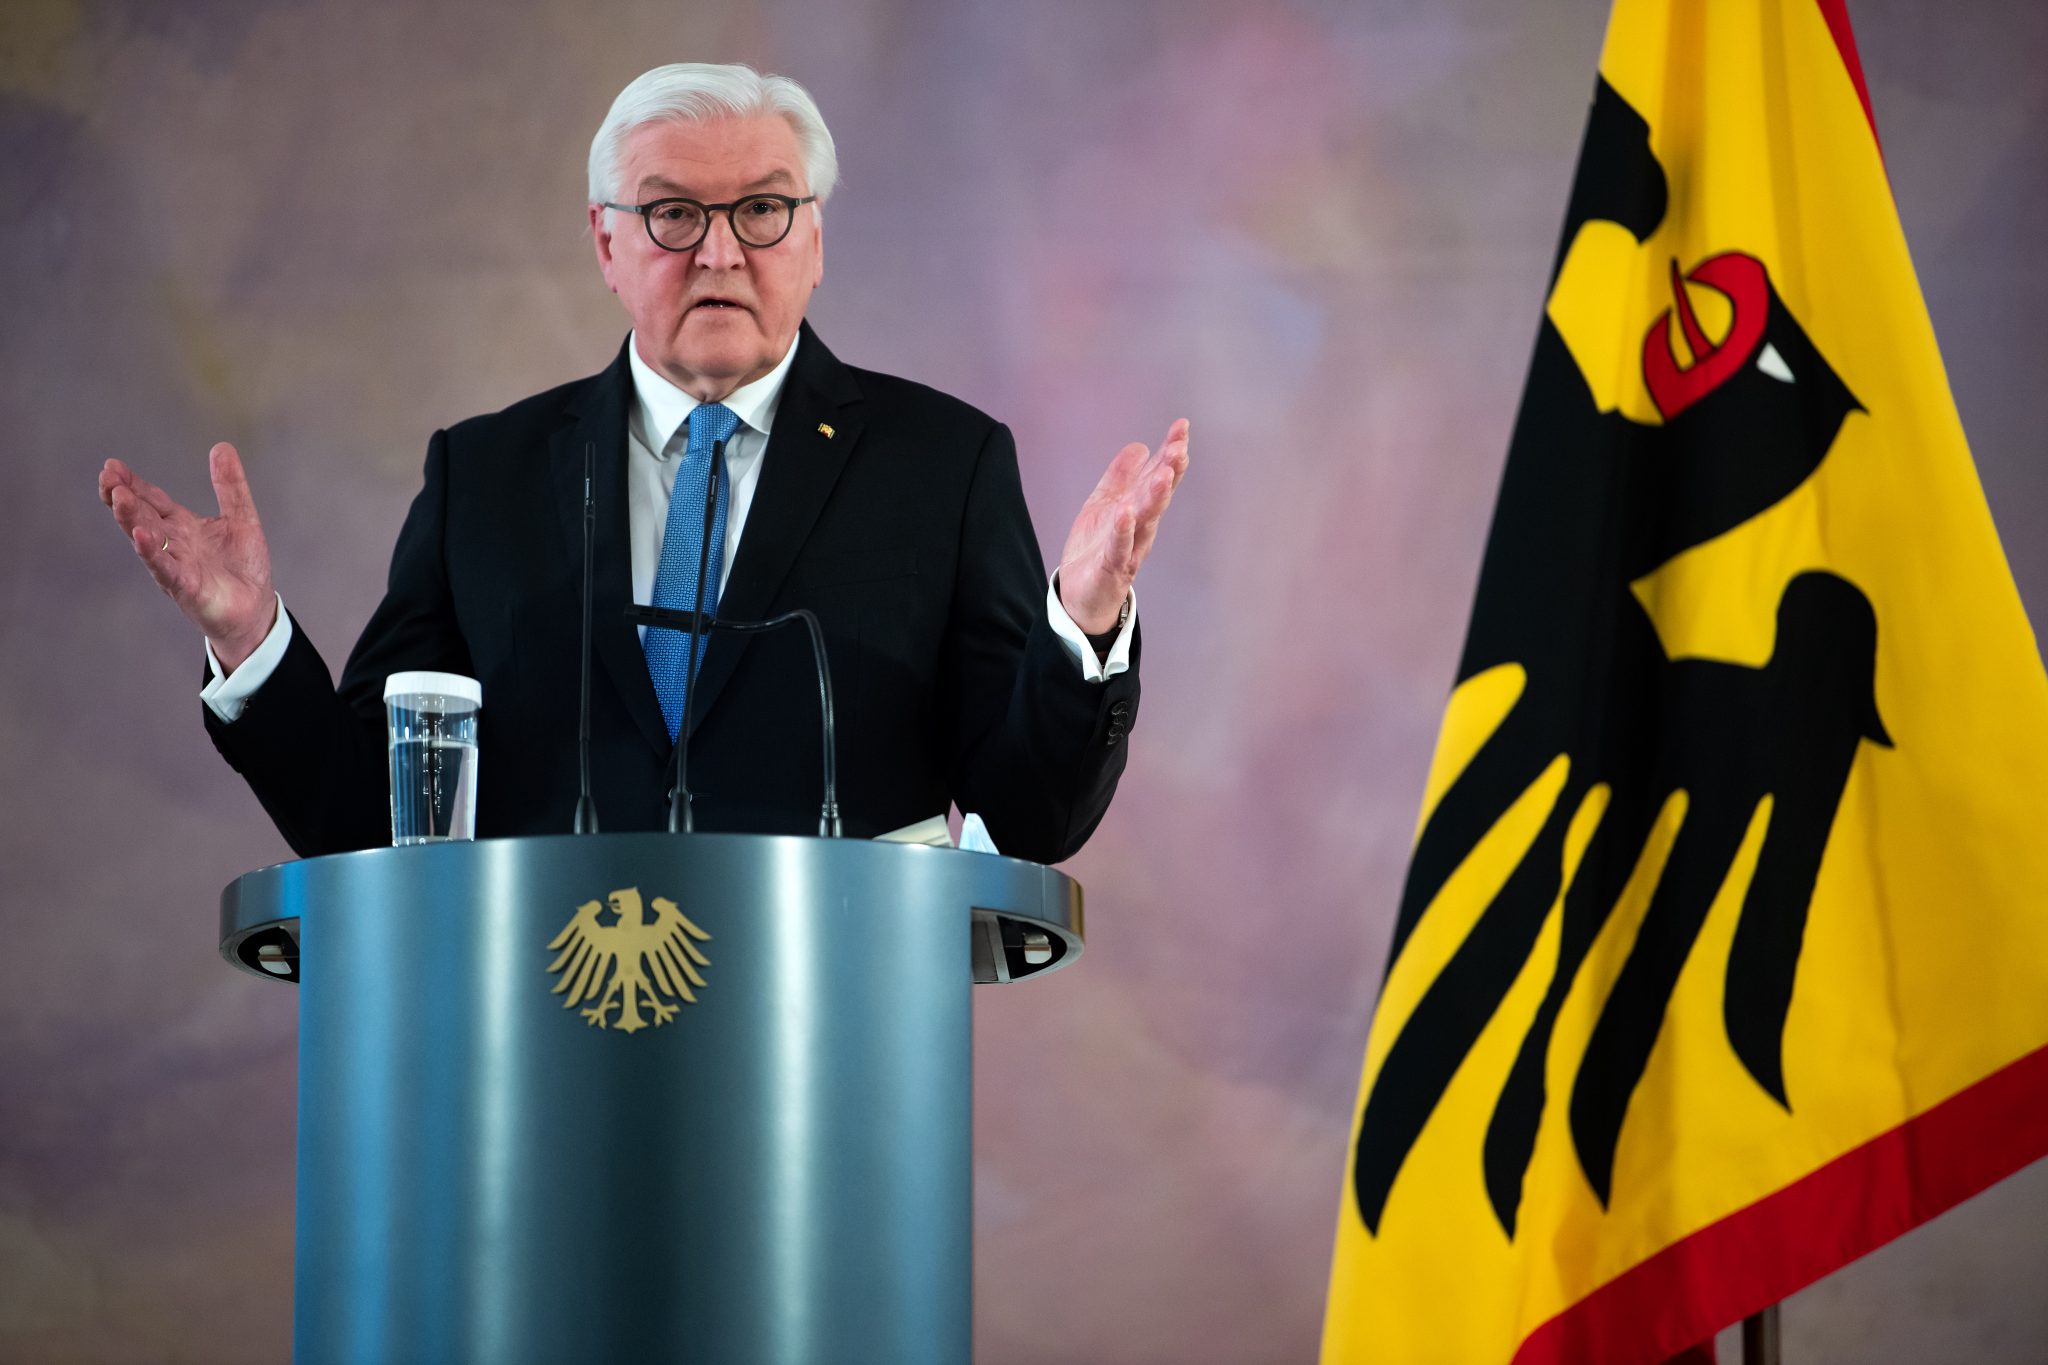 Bundespräsident Frank-Walter Steinmeier: Lebt das, was er vorgibt nicht zu sein